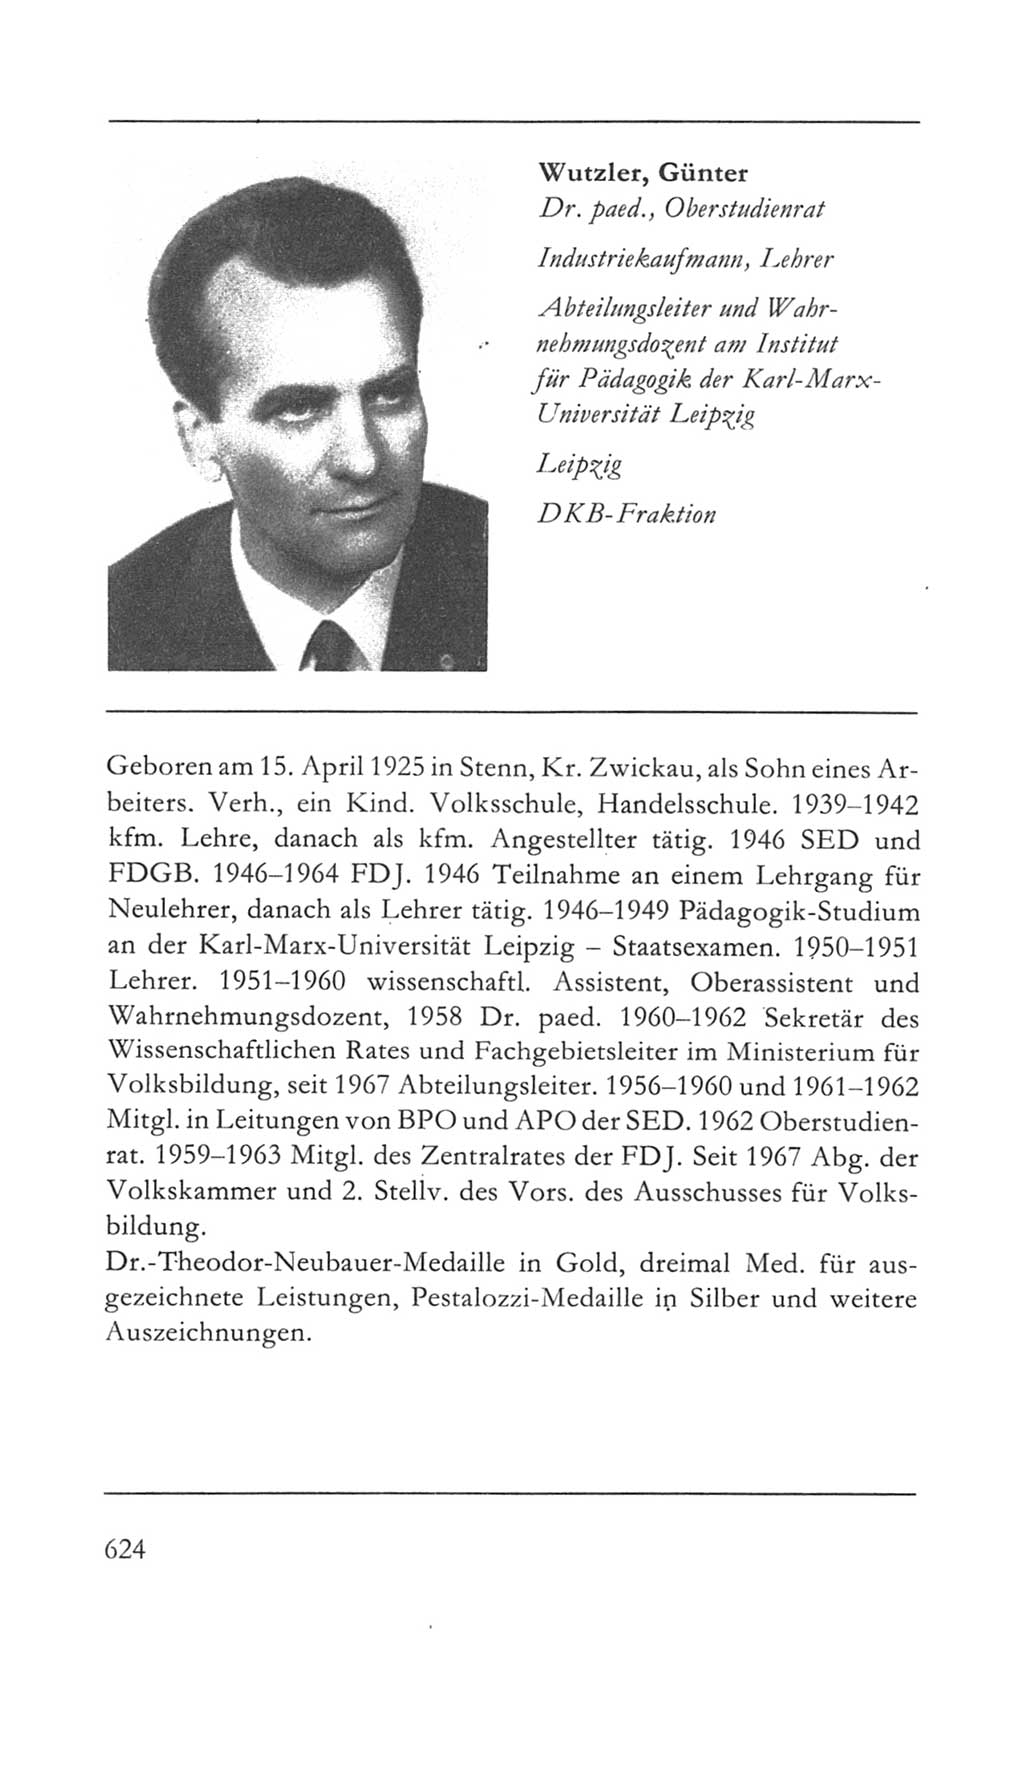 Volkskammer (VK) der Deutschen Demokratischen Republik (DDR) 5. Wahlperiode 1967-1971, Seite 624 (VK. DDR 5. WP. 1967-1971, S. 624)